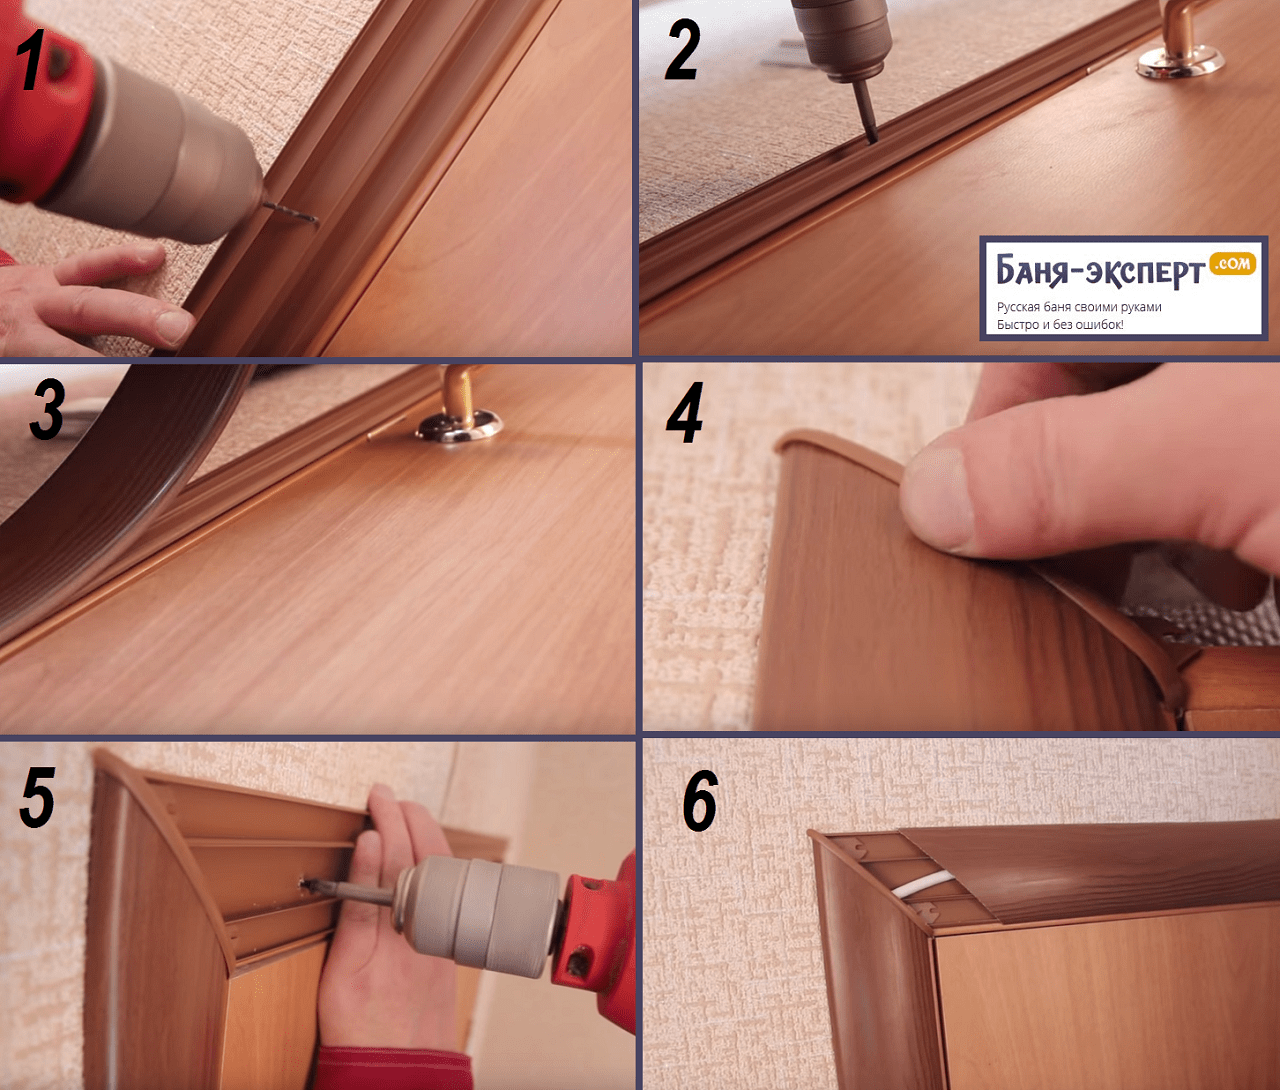 Установка дверей с добором: как делать крепеж своими руками, видео